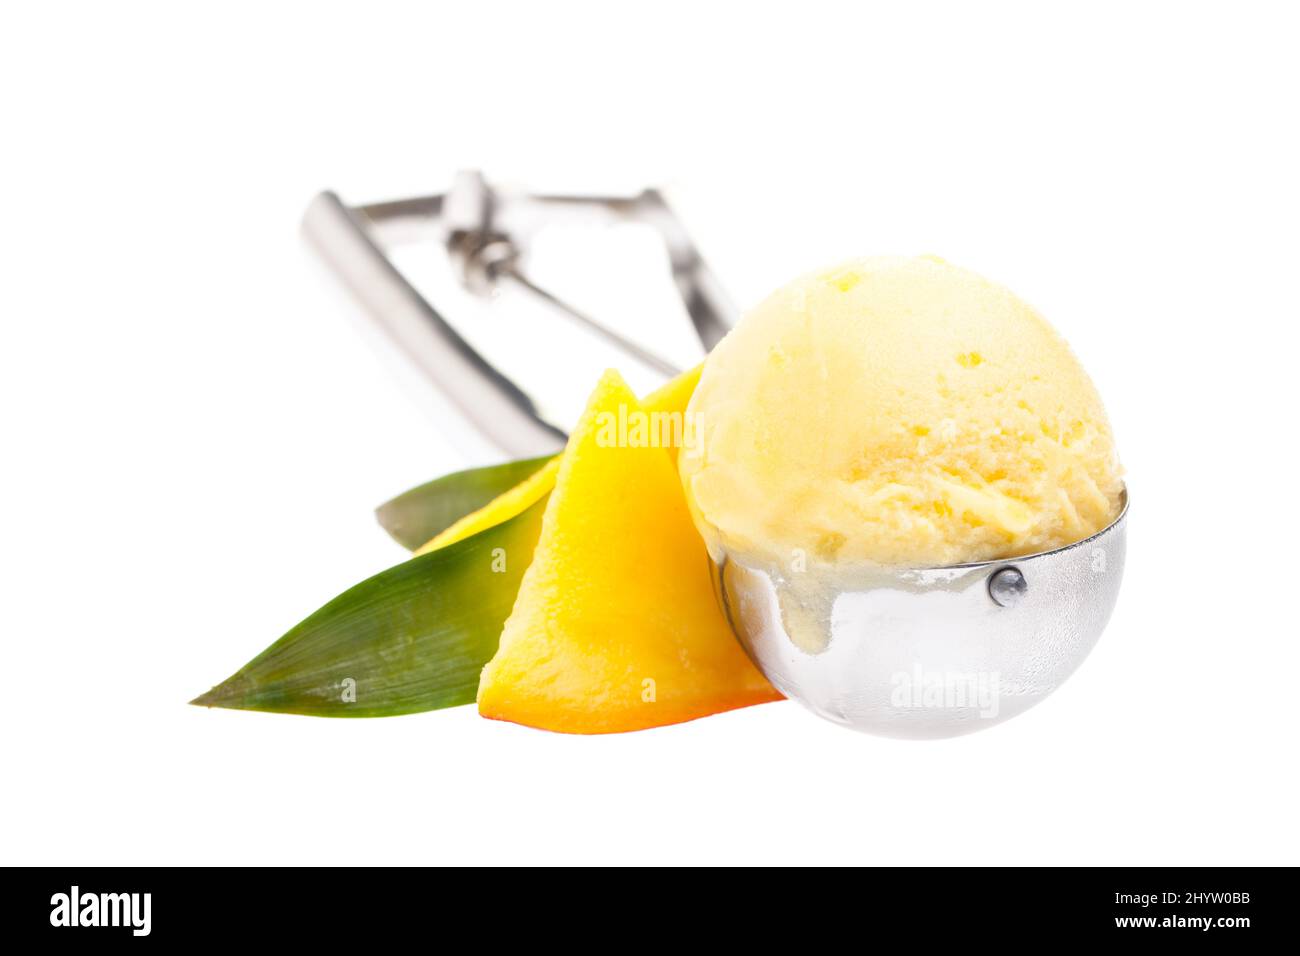 cucchiaio per gelato con gelato al mango isolato su sfondo bianco Foto Stock